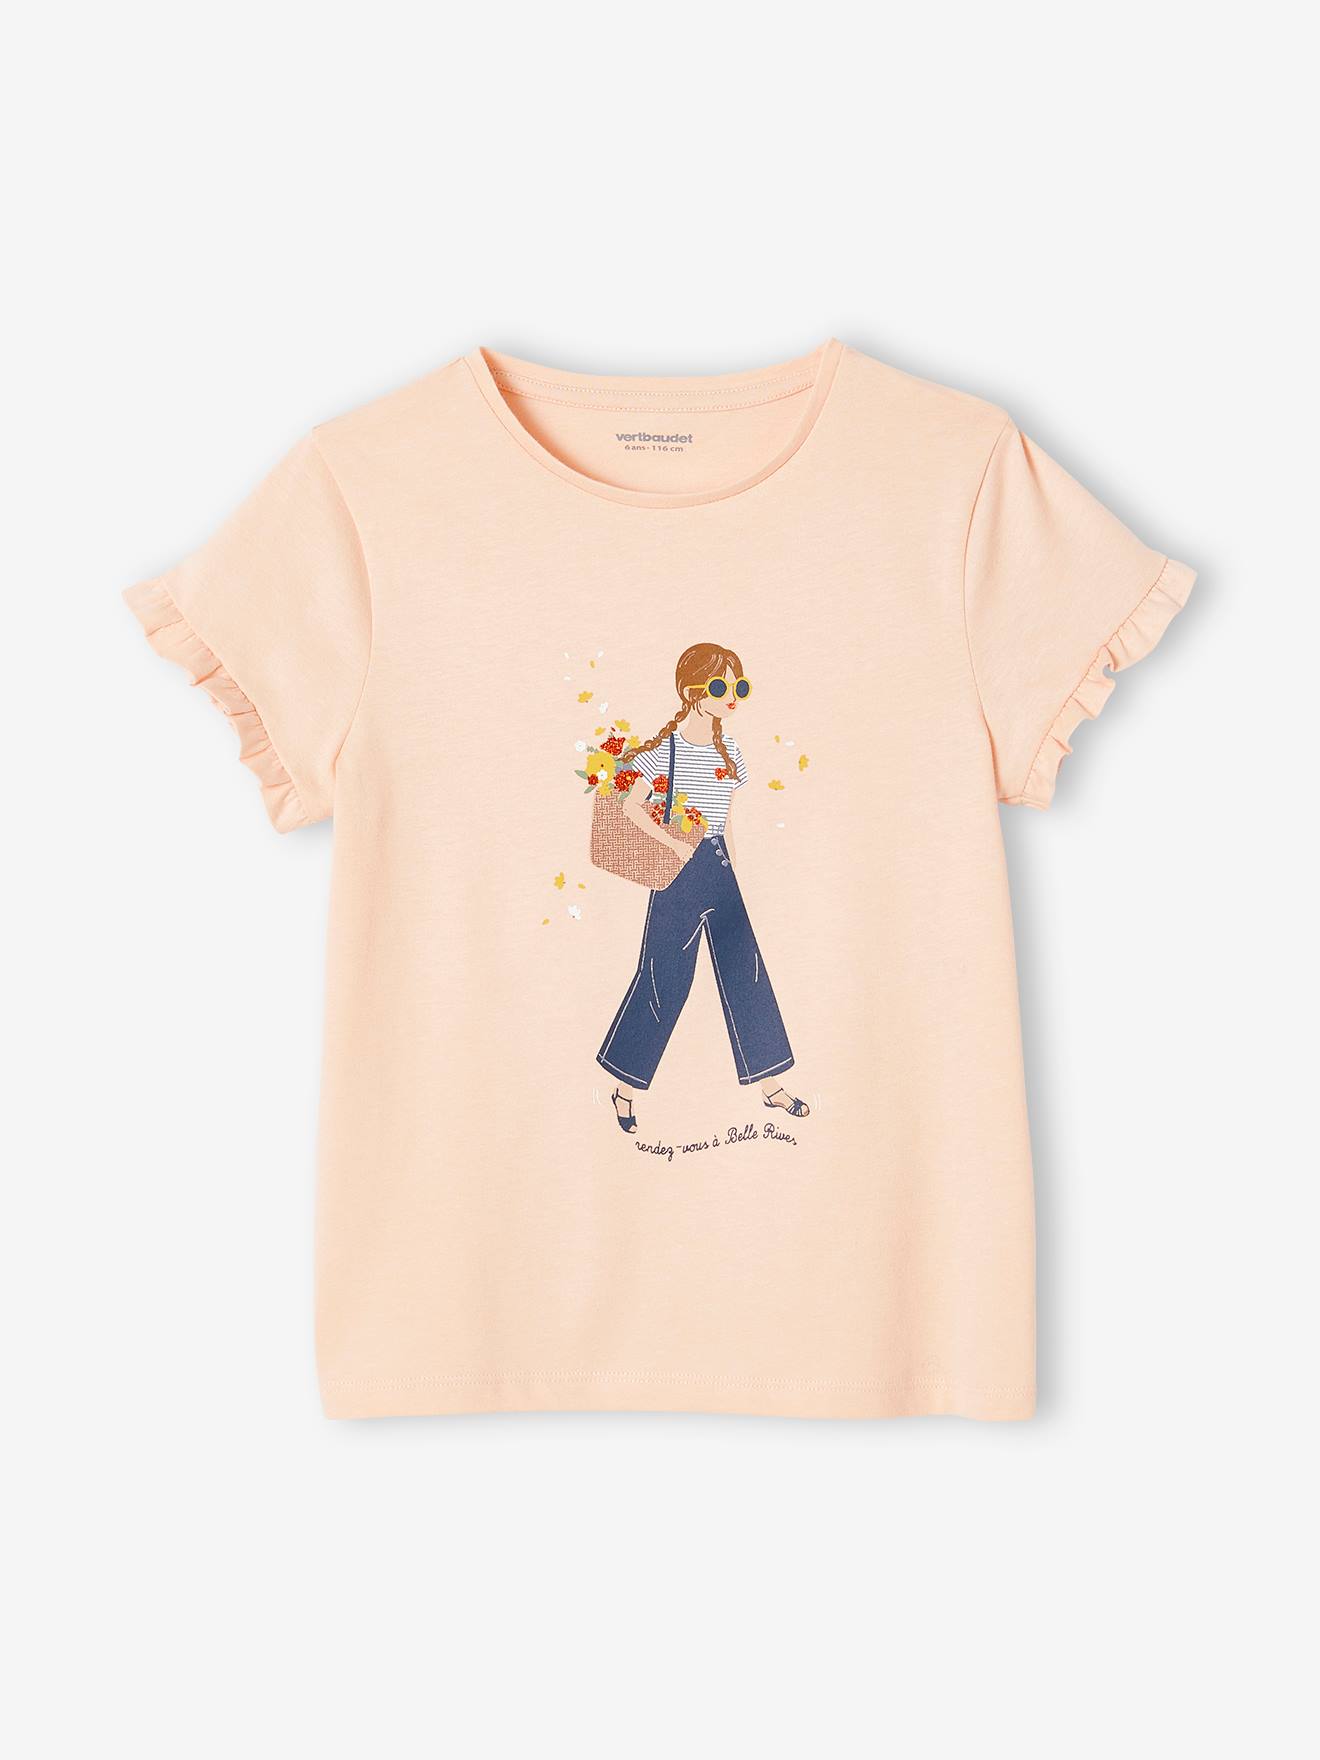 Mädchen T-Shirt von Vertbaudet